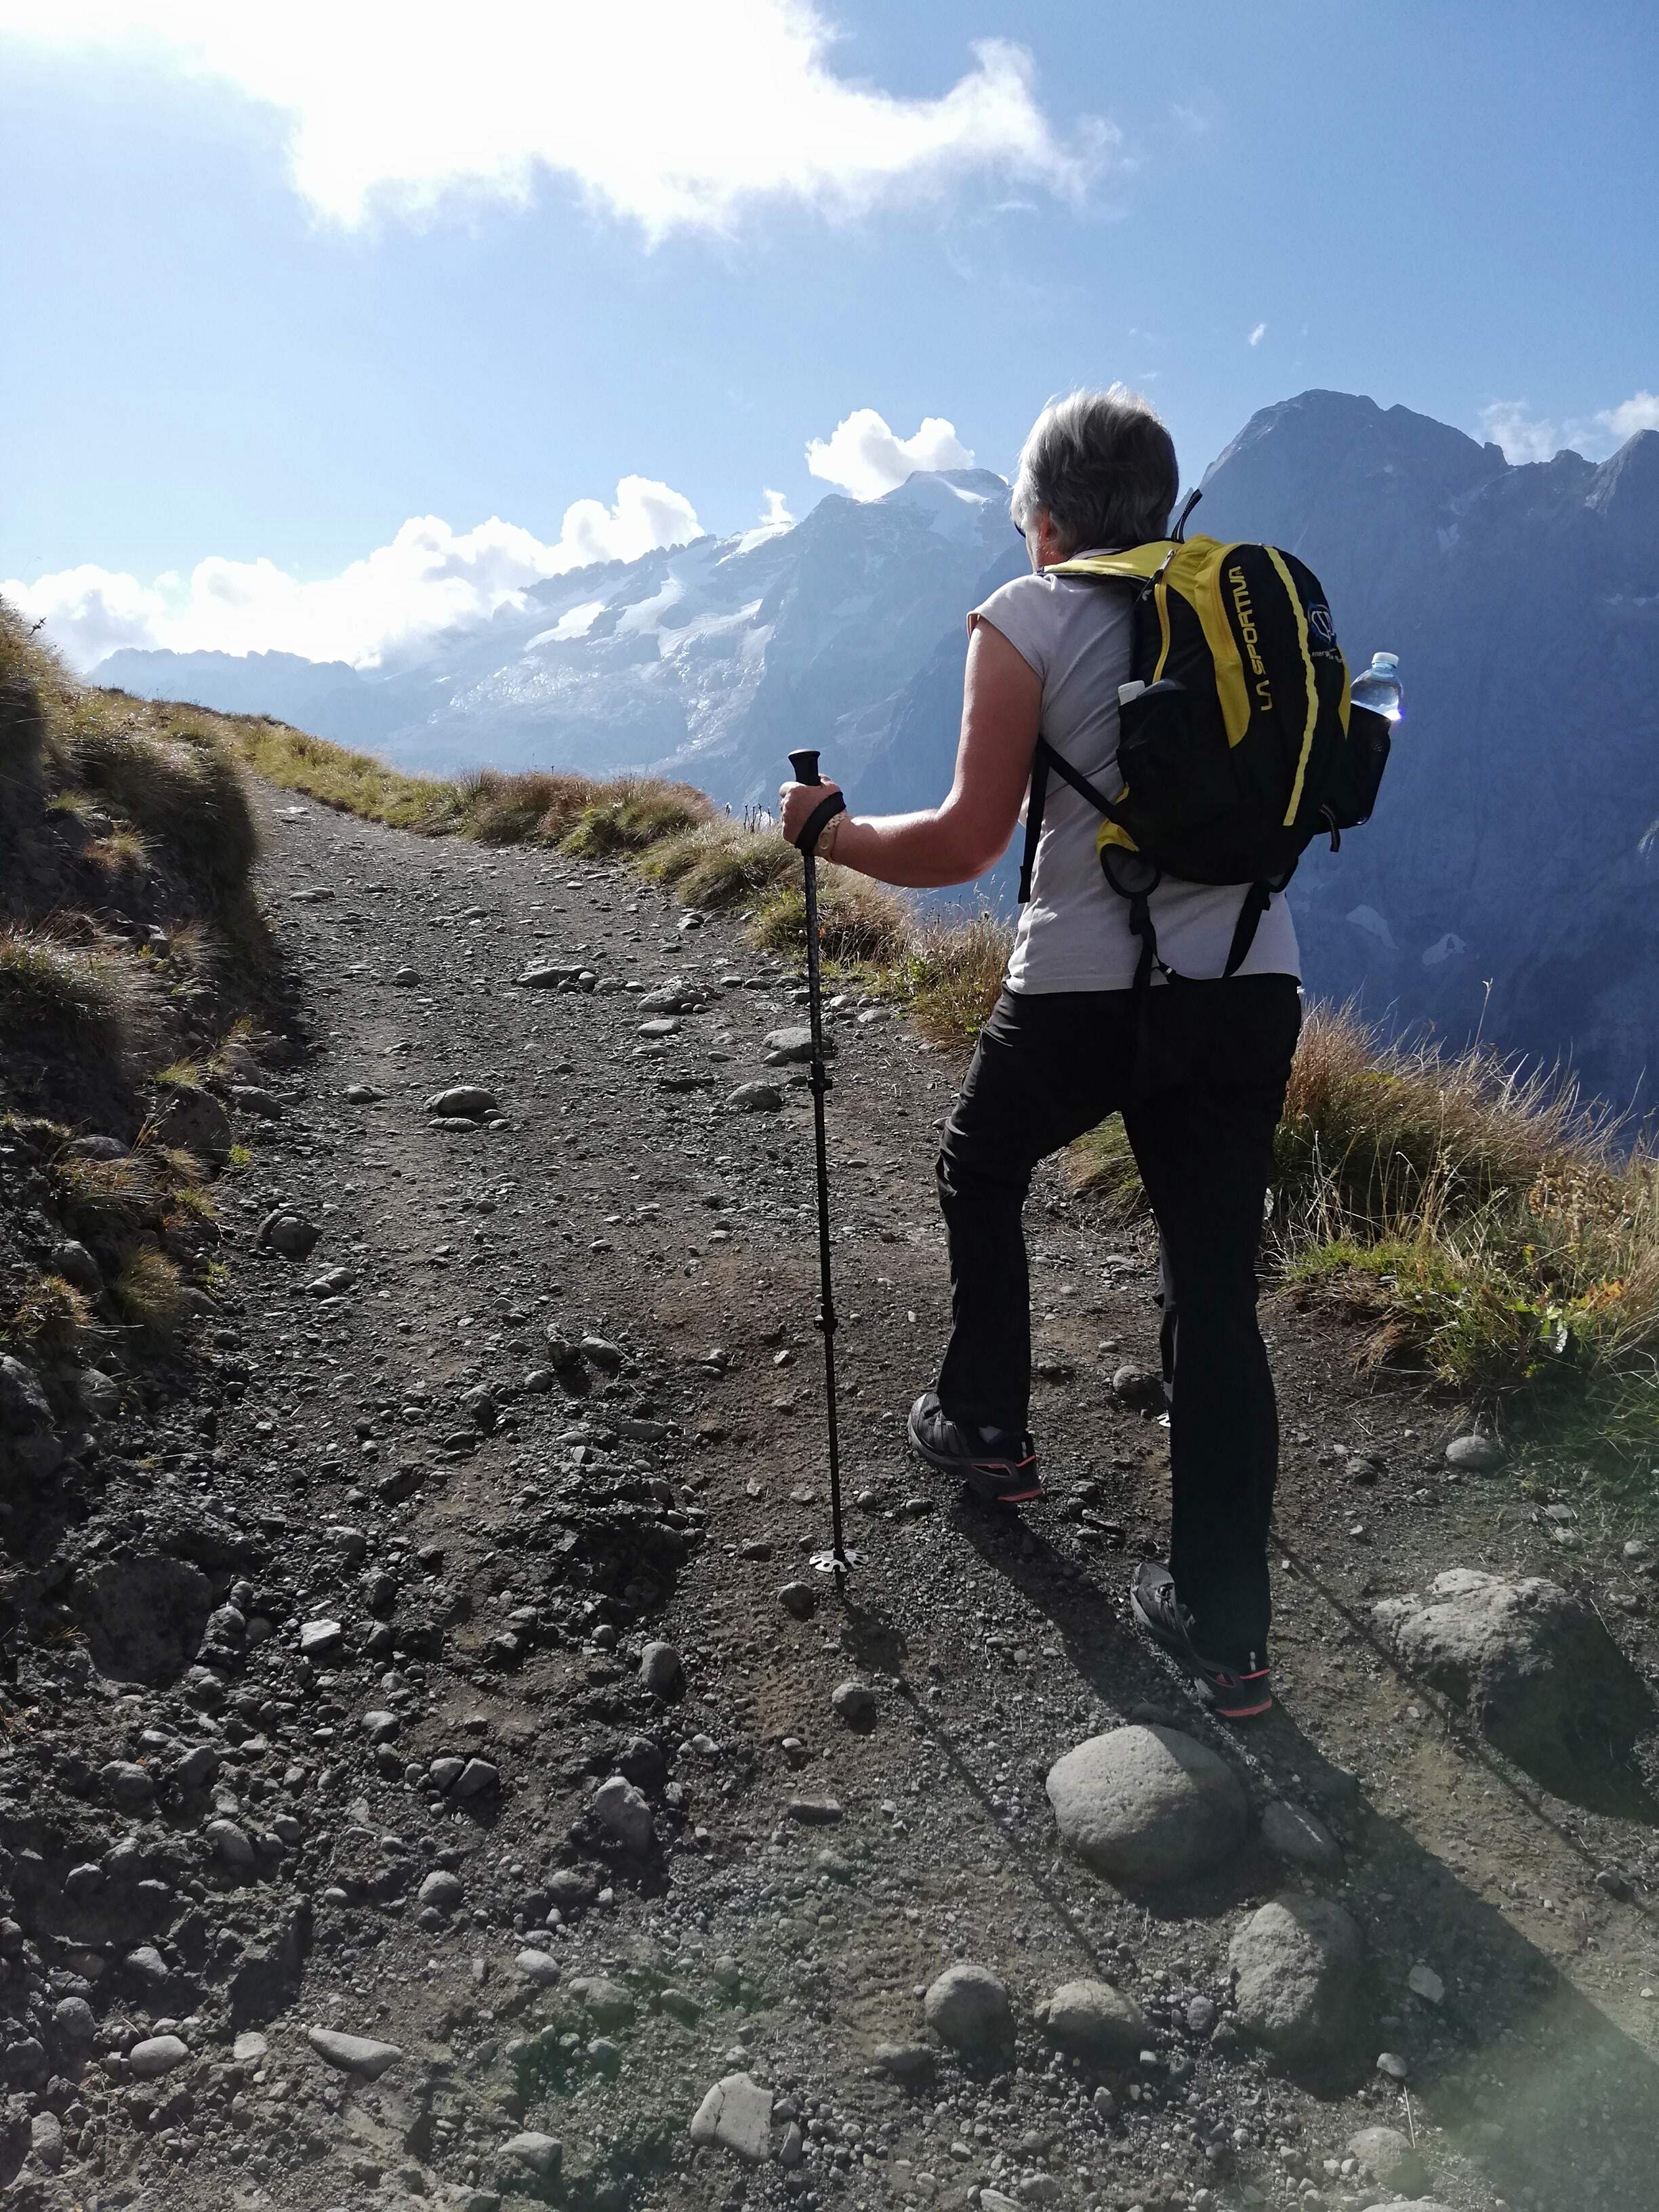 Escursionista con bastoni da trekking che affronta sentiero sterrato in montagna